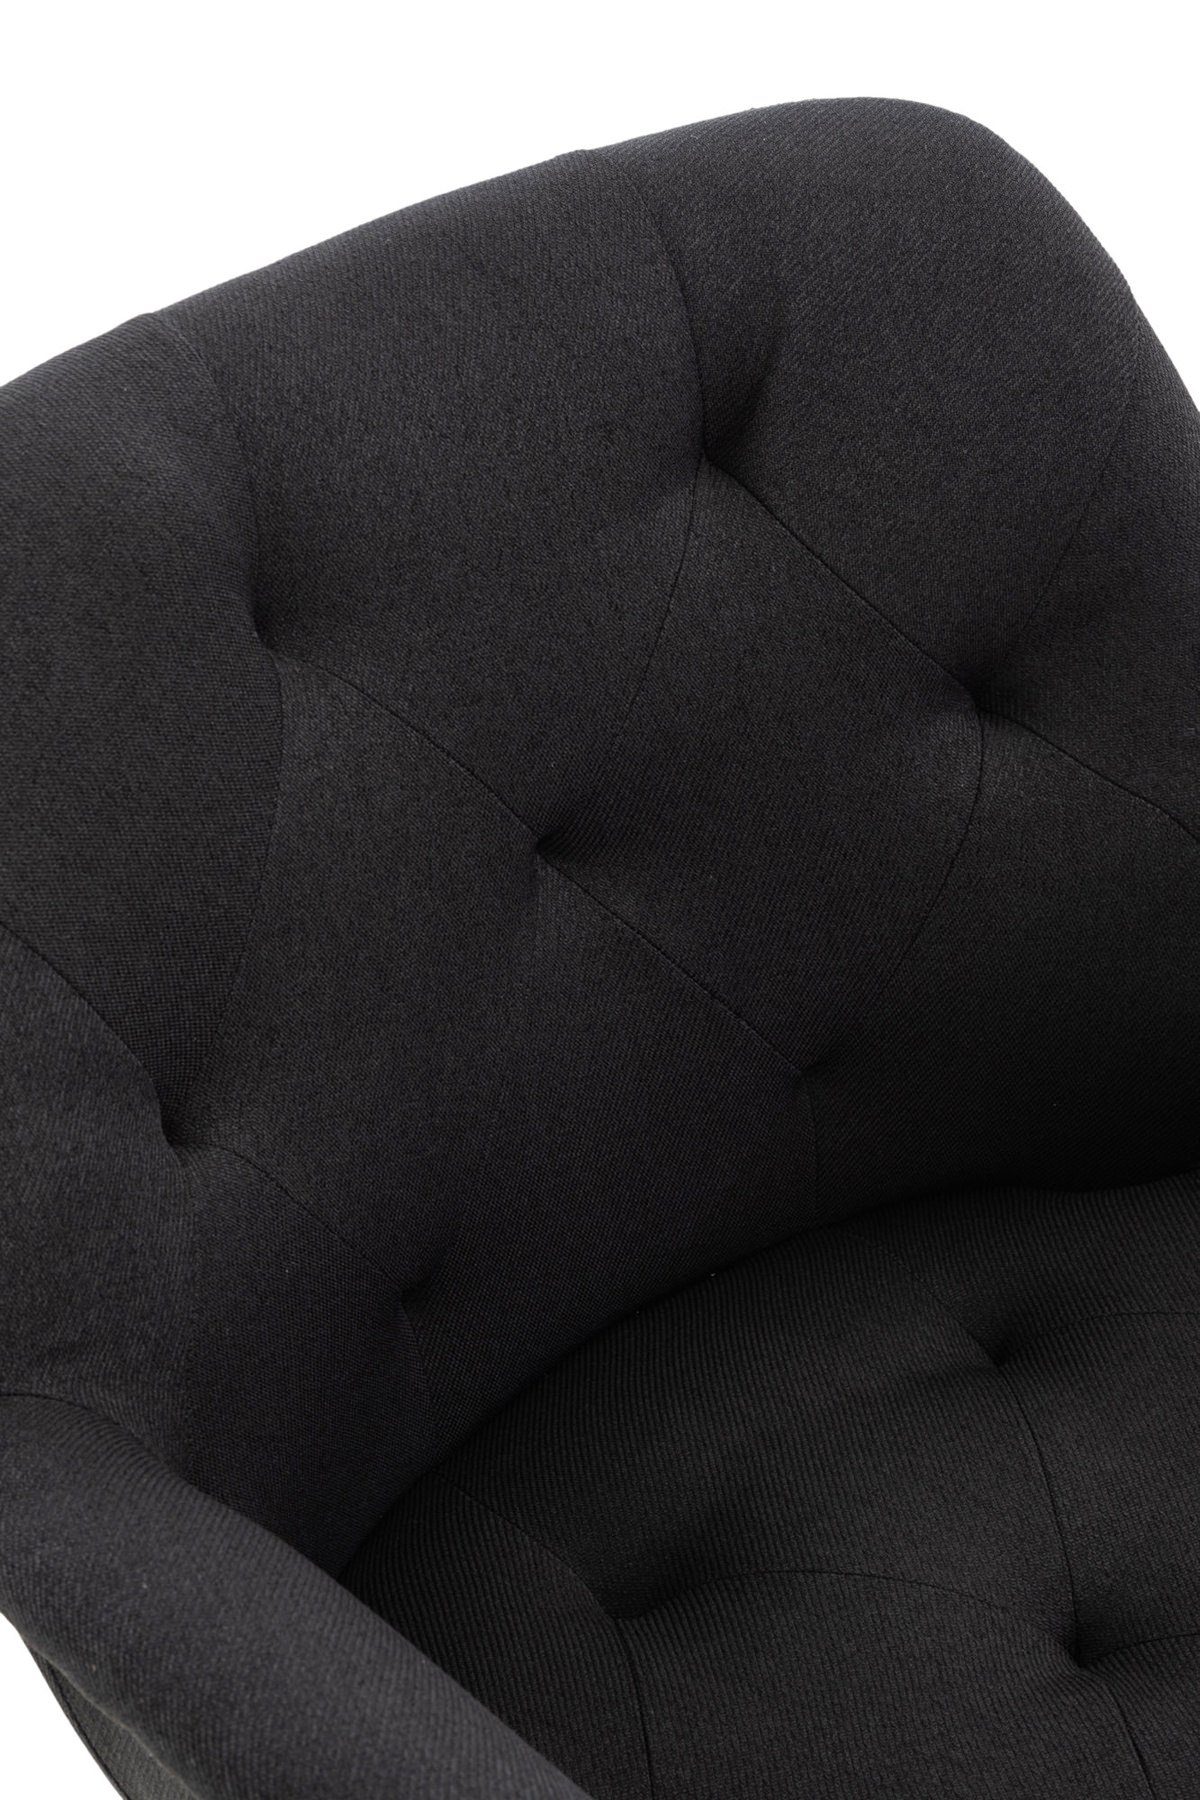 - Lamfol - Sitzfläche: Esszimmerstuhl Sitzfläche gepolsterter Konferenzstuhl hochwertig - schwarz Wohnzimmerstuhl), Metall Esstischstuhl (Küchenstuhl - Stoff Gestell: TPFLiving mit schwarz